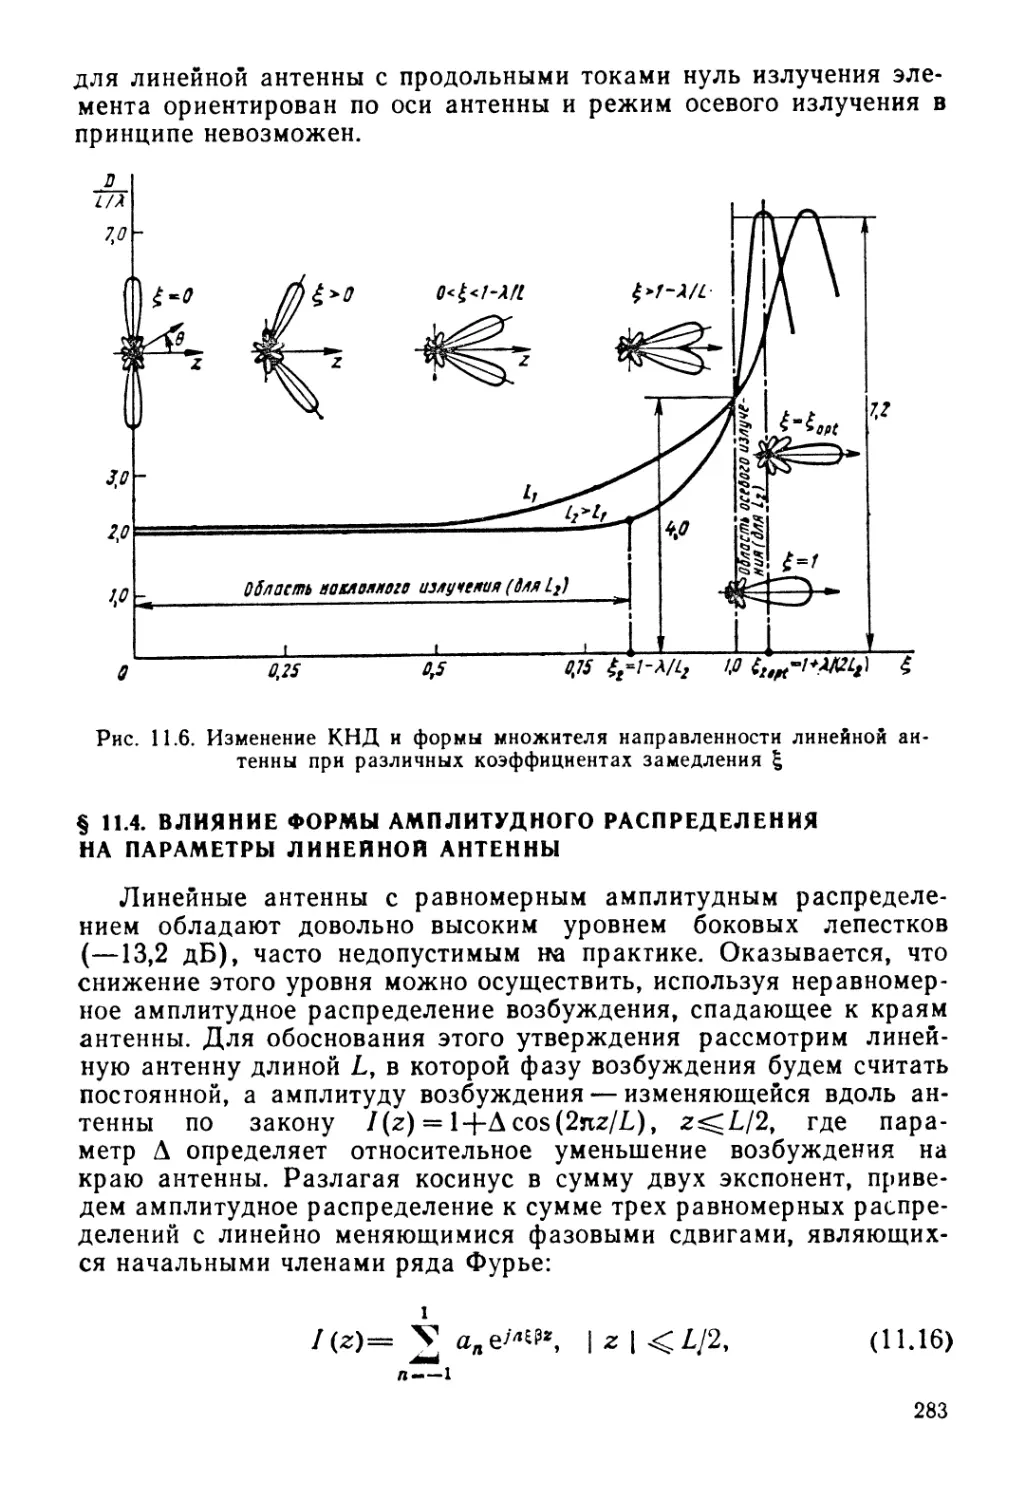 § 11.4. Влияние формы амплитудного распределения иа параметры линейной антенны